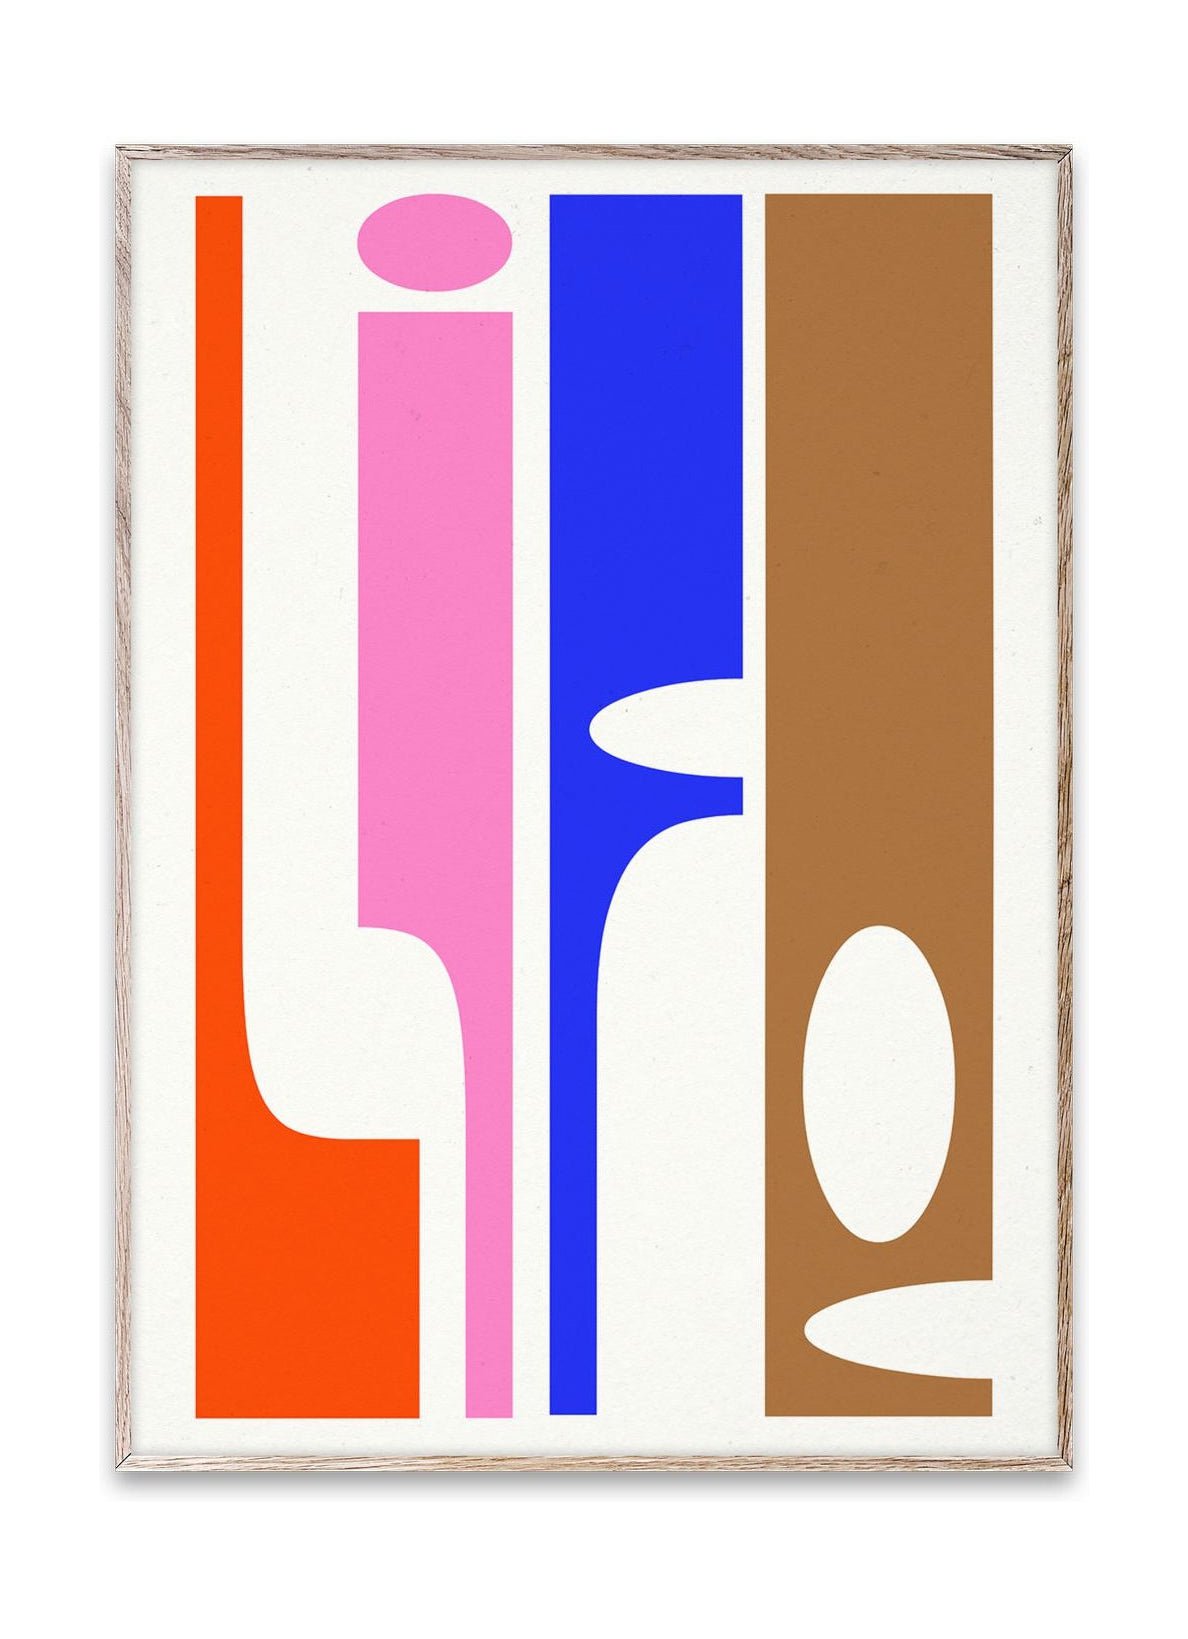 Pappers kollektiv mjukhetsaffisch, 50 x 70 cm